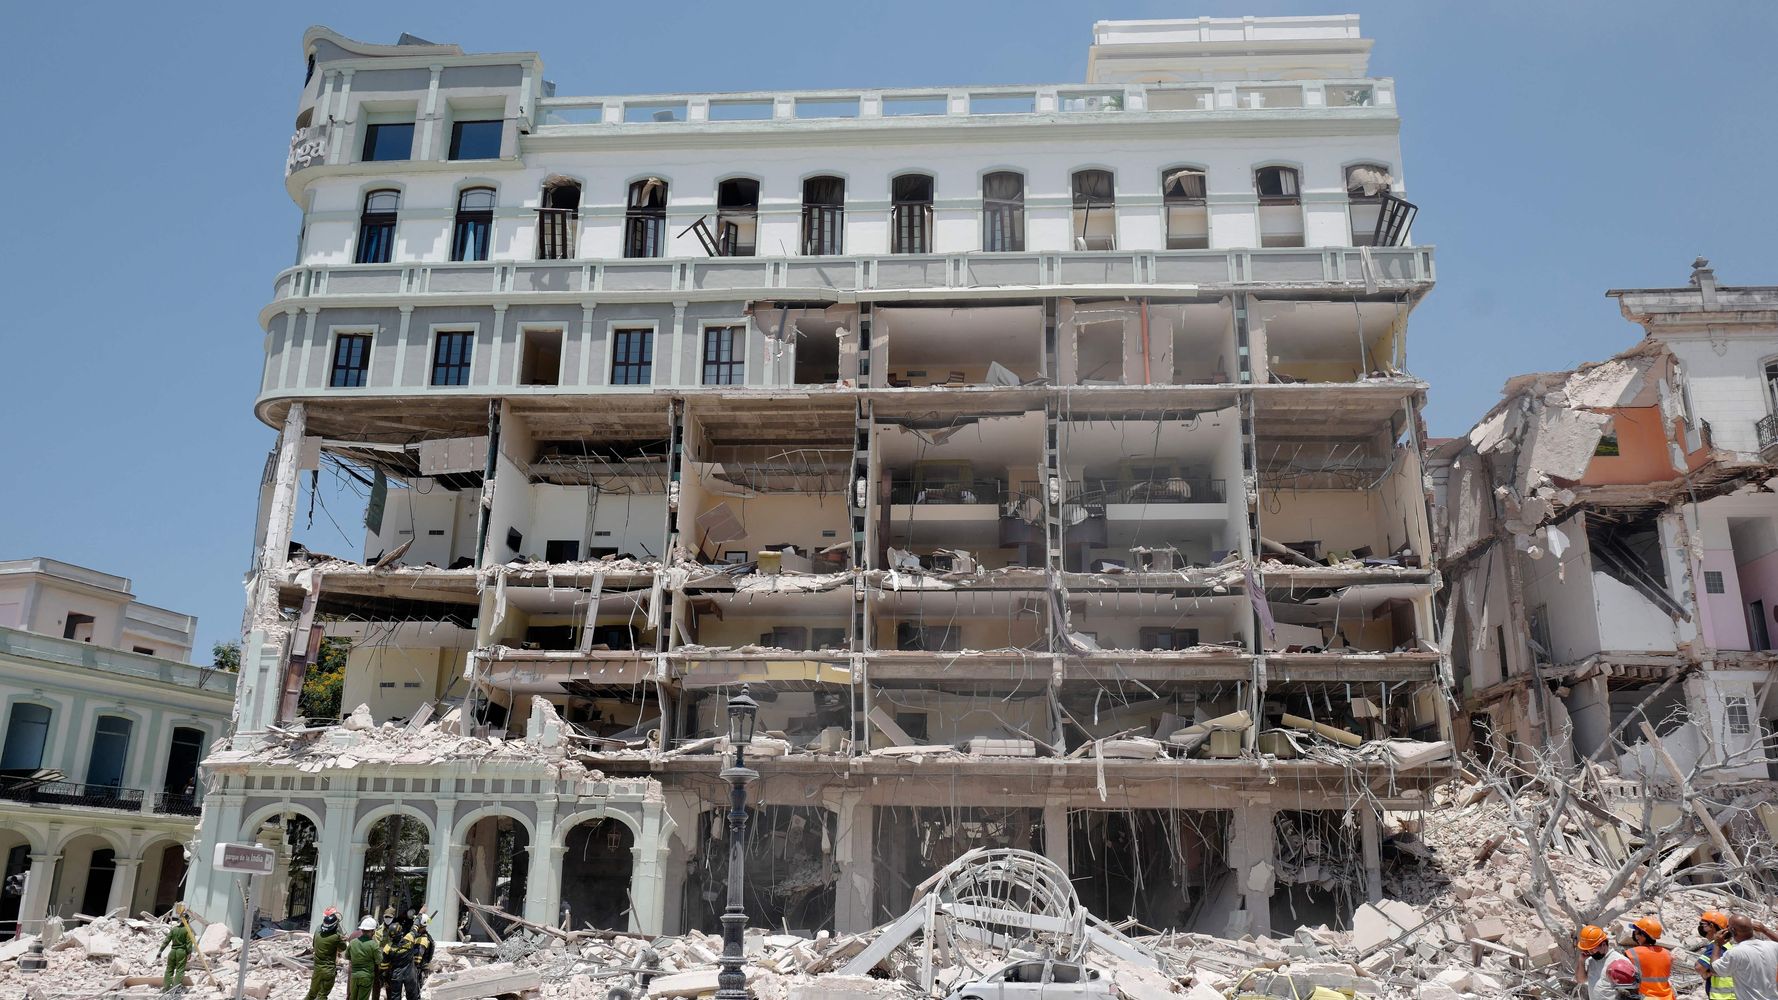 Une puissante explosion dans un hôtel de luxe à La Havane fait au moins 8 morts et 40 blessés